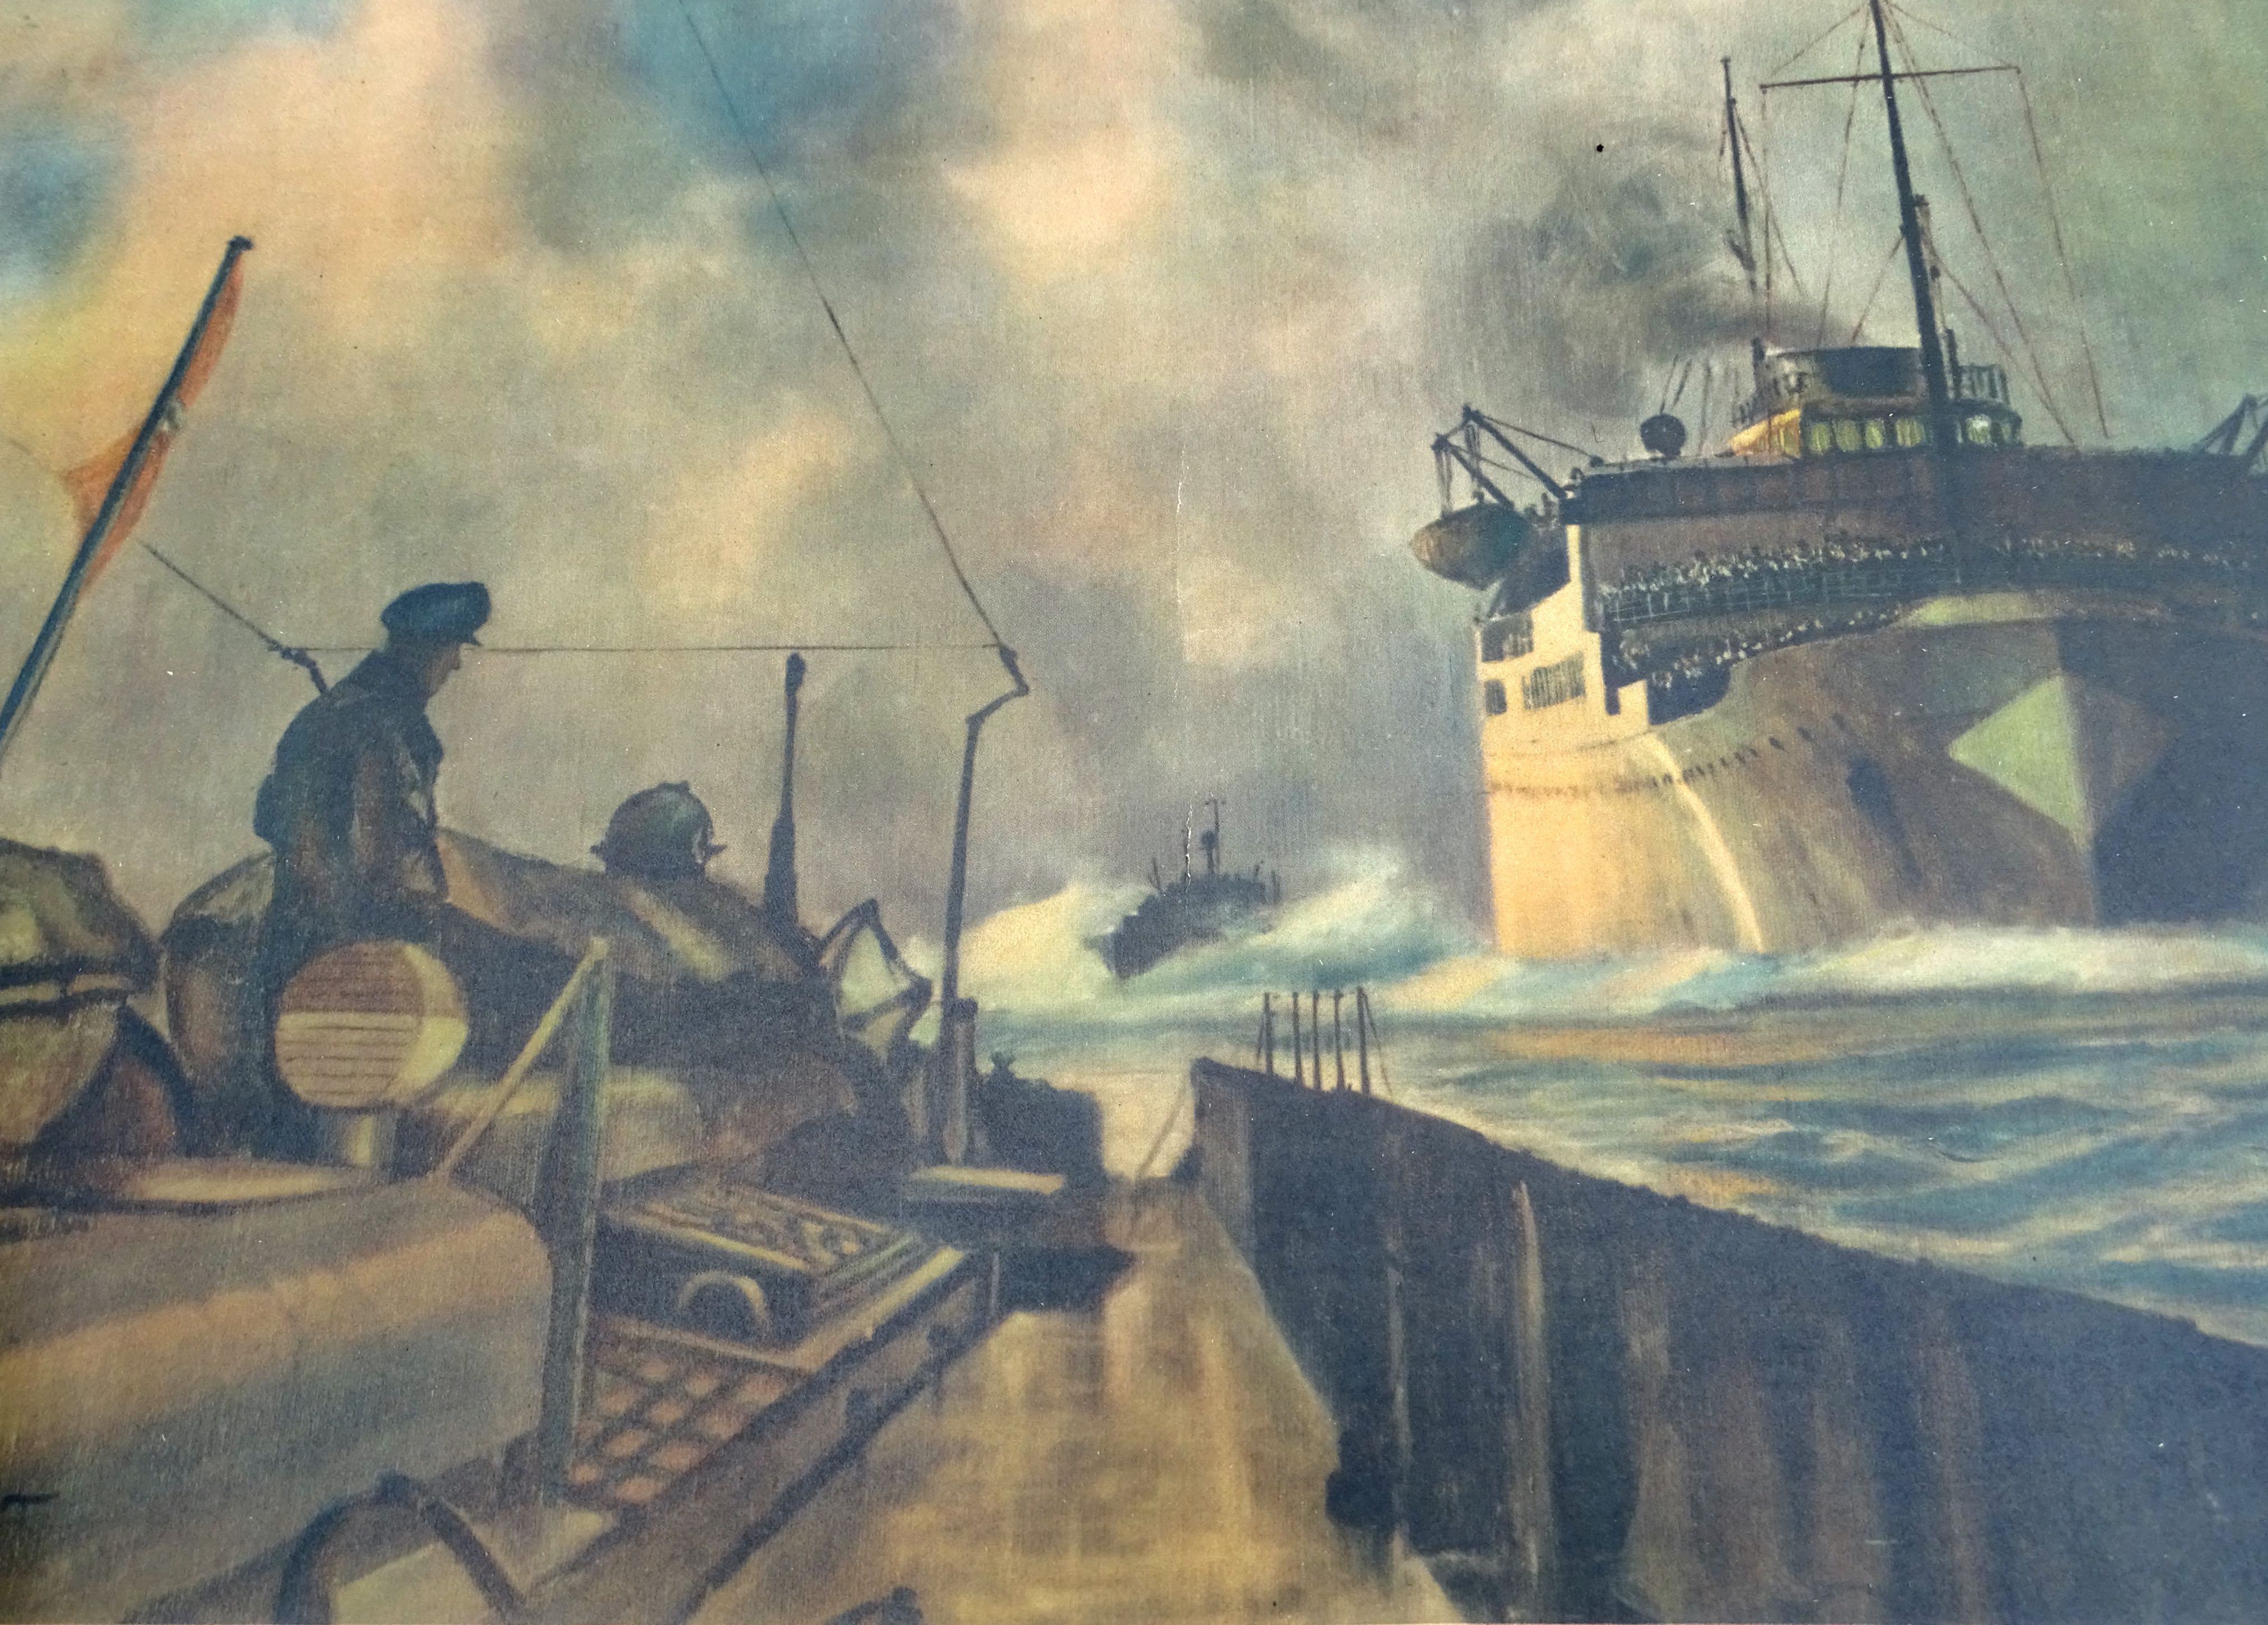 German WWII Navy Poster,   Deutscher Truppentransporter auf dem Marsche Dolhart 1943